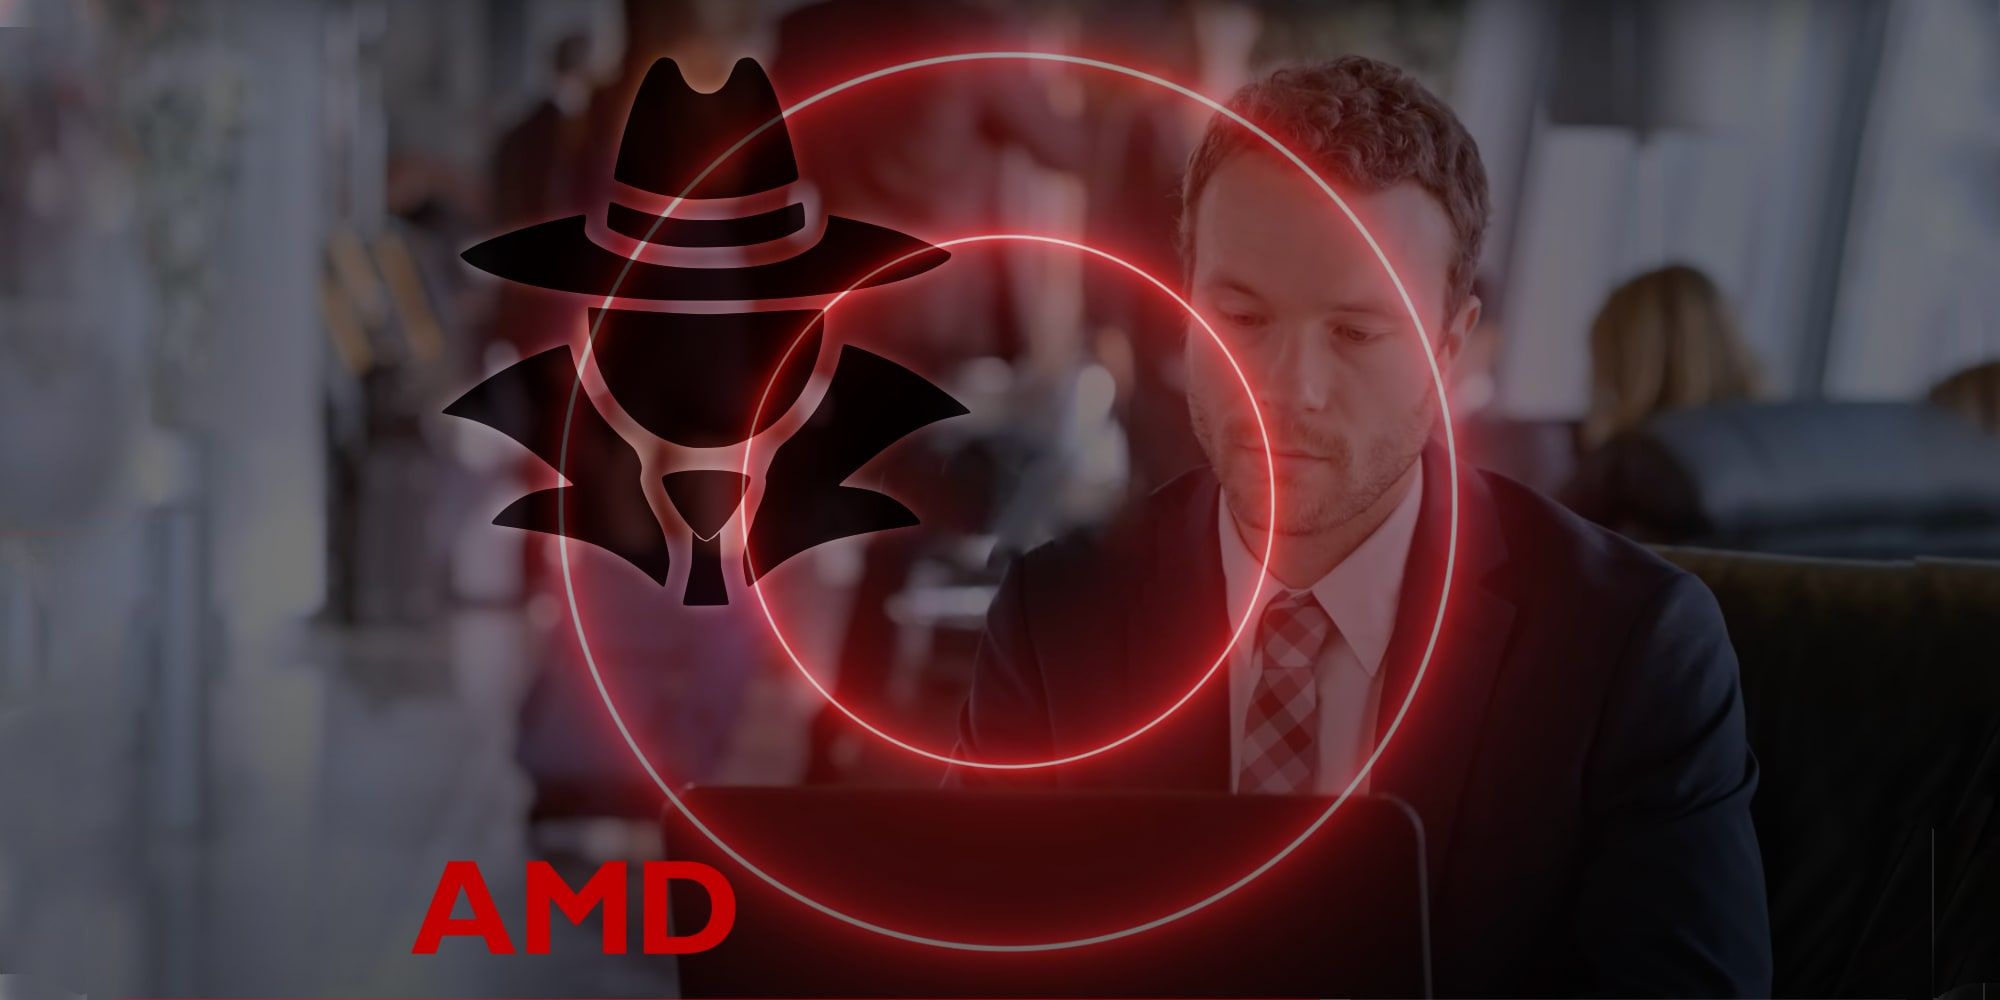 AMD literalmente pone el foco en la privacidad con una técnica de seguimiento ocular